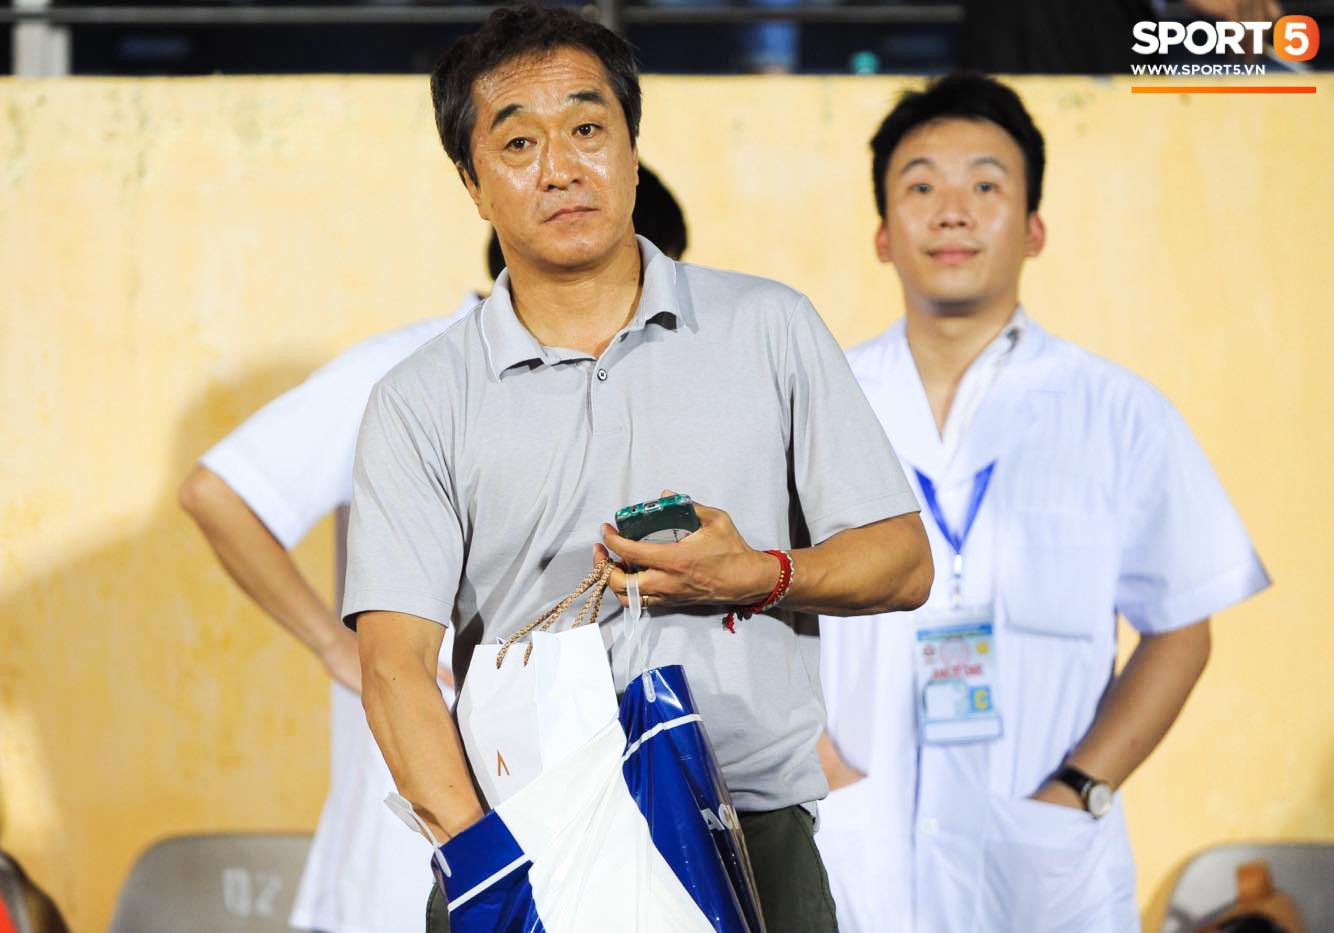 Đức Chinh không nỡ chia tay thầy Lee sau trận đấu với Nam Định tại vòng 13 V.League 2019 - Ảnh 3.